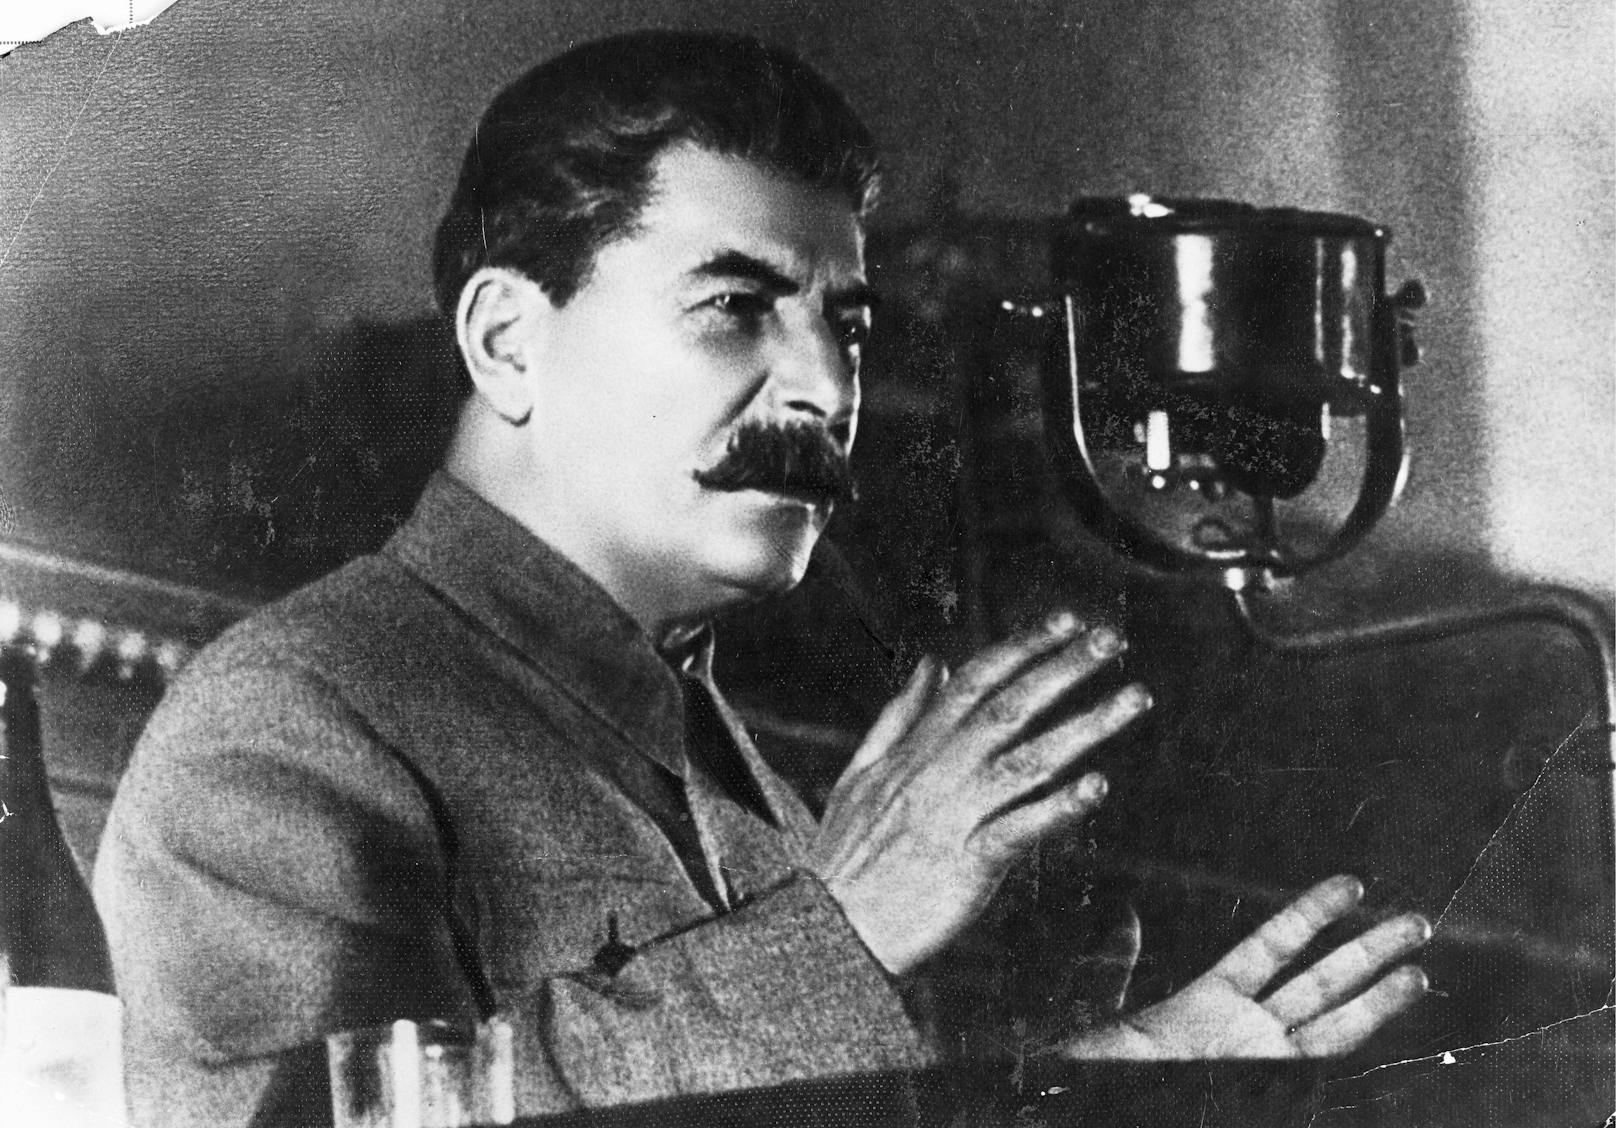 Josef Stalin herrschte von 1927 bis 1953 als Diktator über die Sowjetunion.